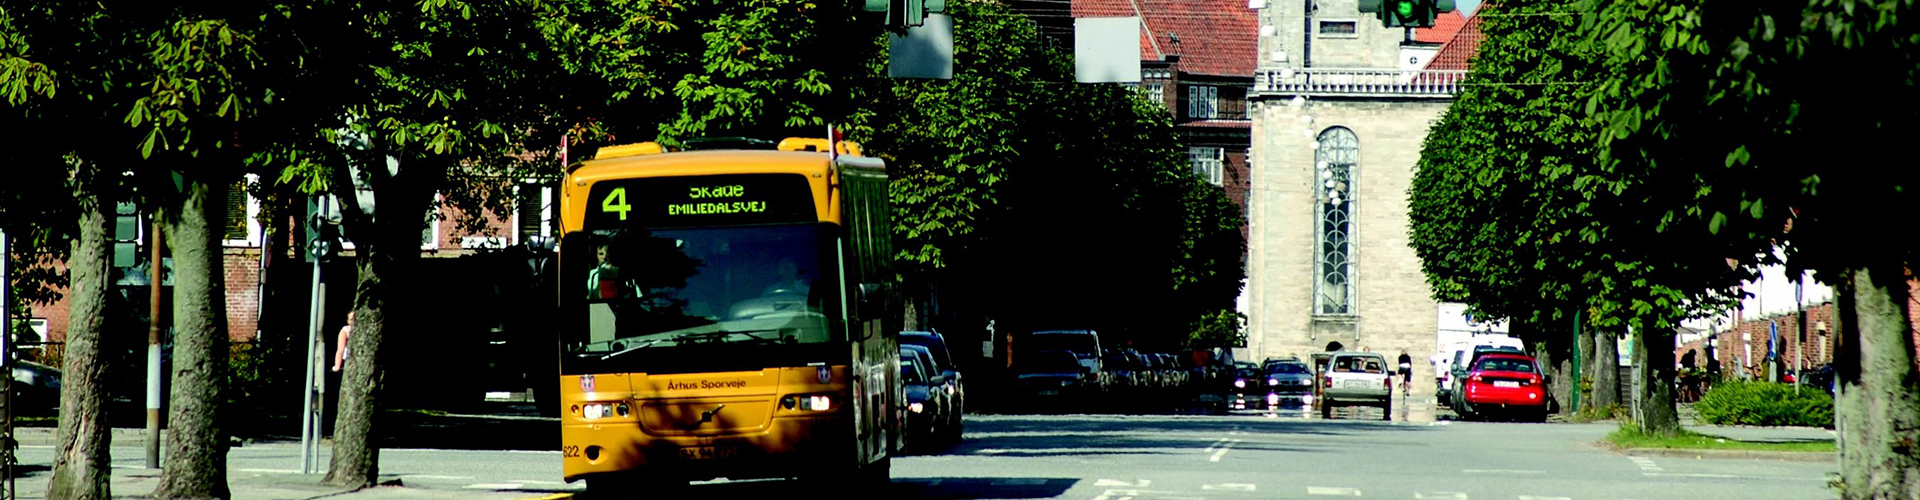 Bus in Aarhus